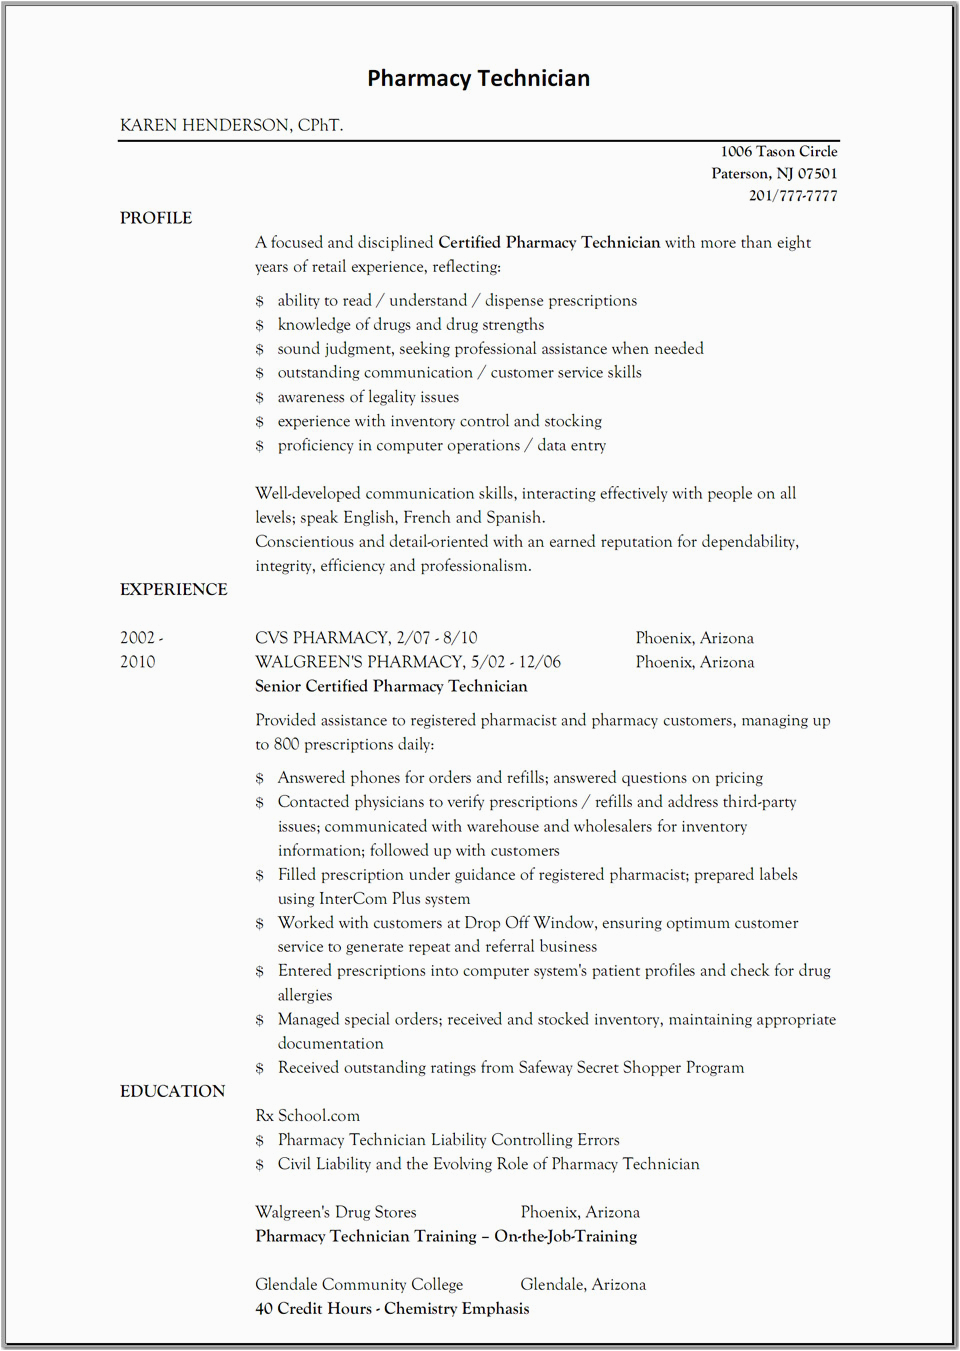 sample resume for pharmacy technician